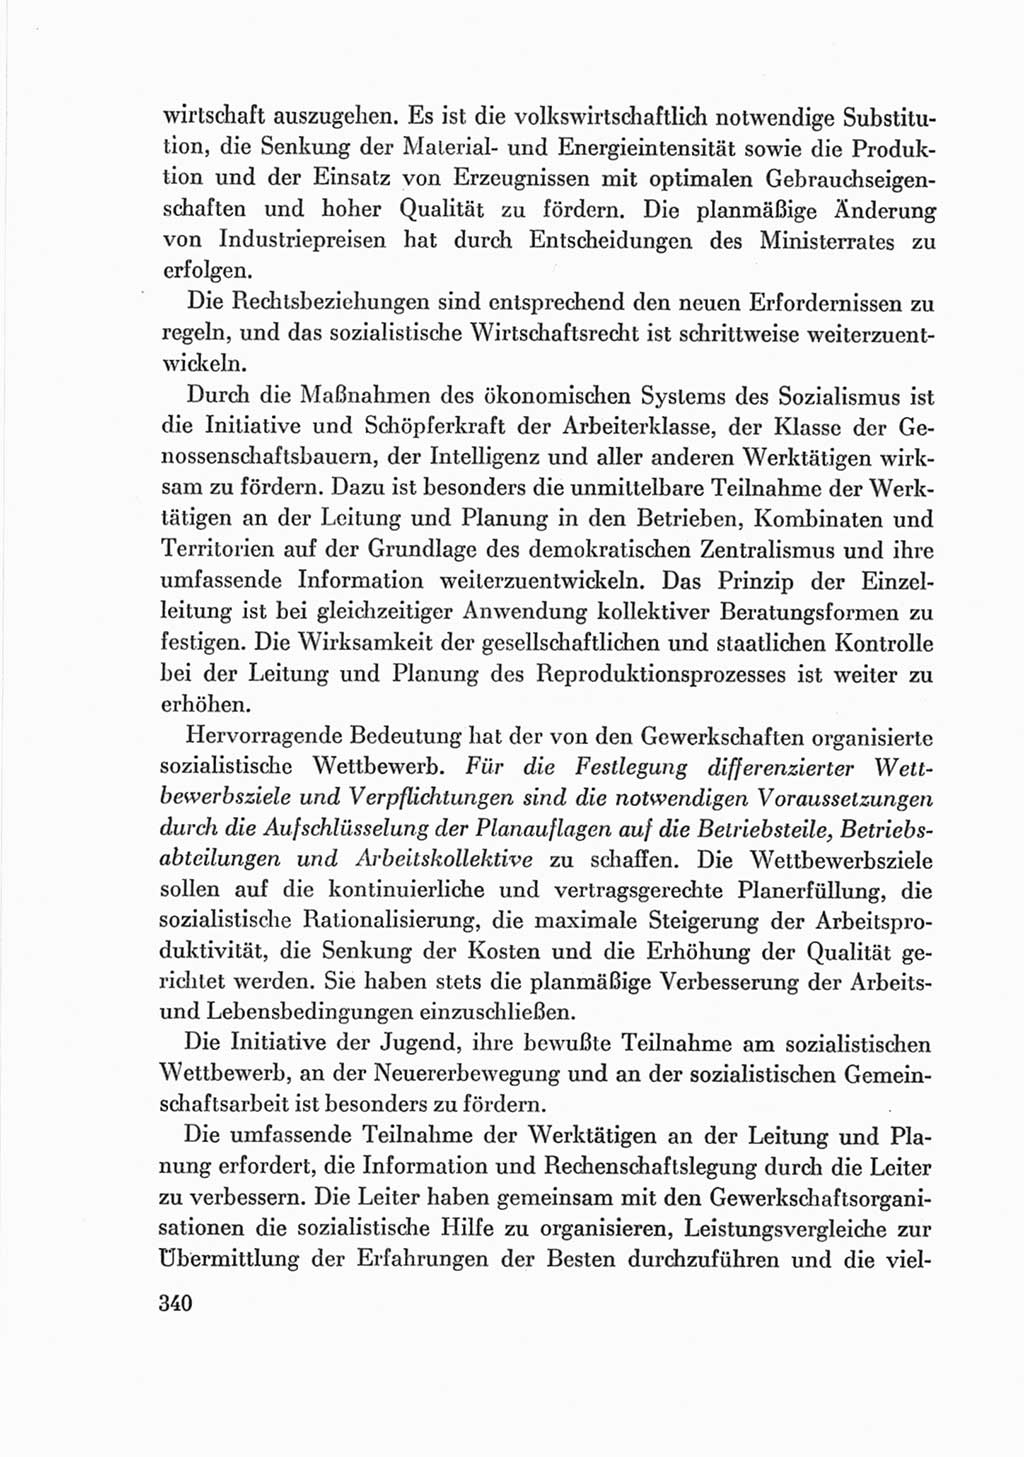 Protokoll der Verhandlungen des Ⅷ. Parteitages der Sozialistischen Einheitspartei Deutschlands (SED) [Deutsche Demokratische Republik (DDR)] 1971, Band 2, Seite 340 (Prot. Verh. Ⅷ. PT SED DDR 1971, Bd. 2, S. 340)